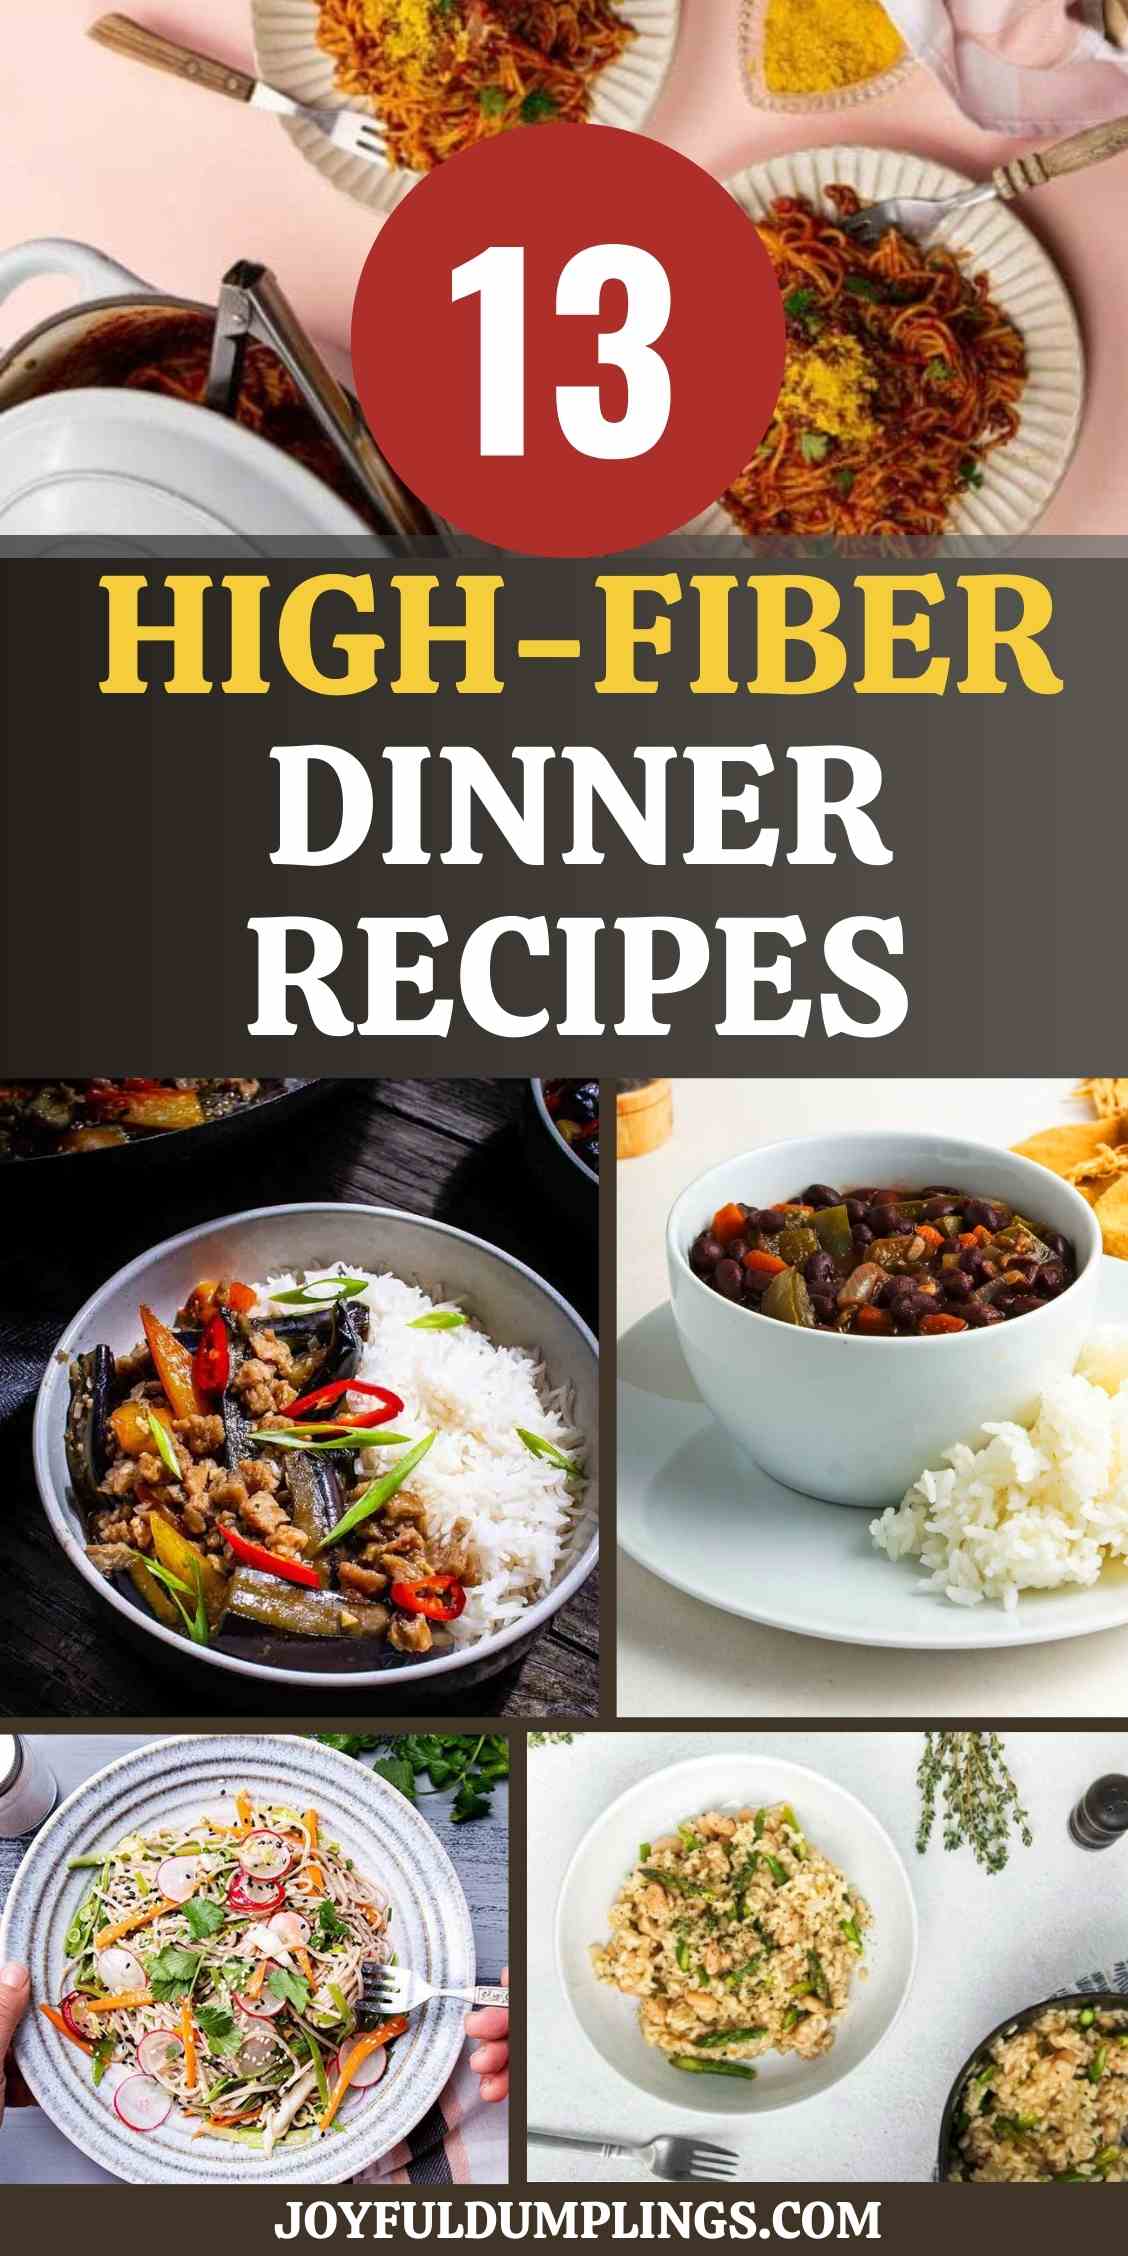 14 Easy High-Fiber Meals for Dinner